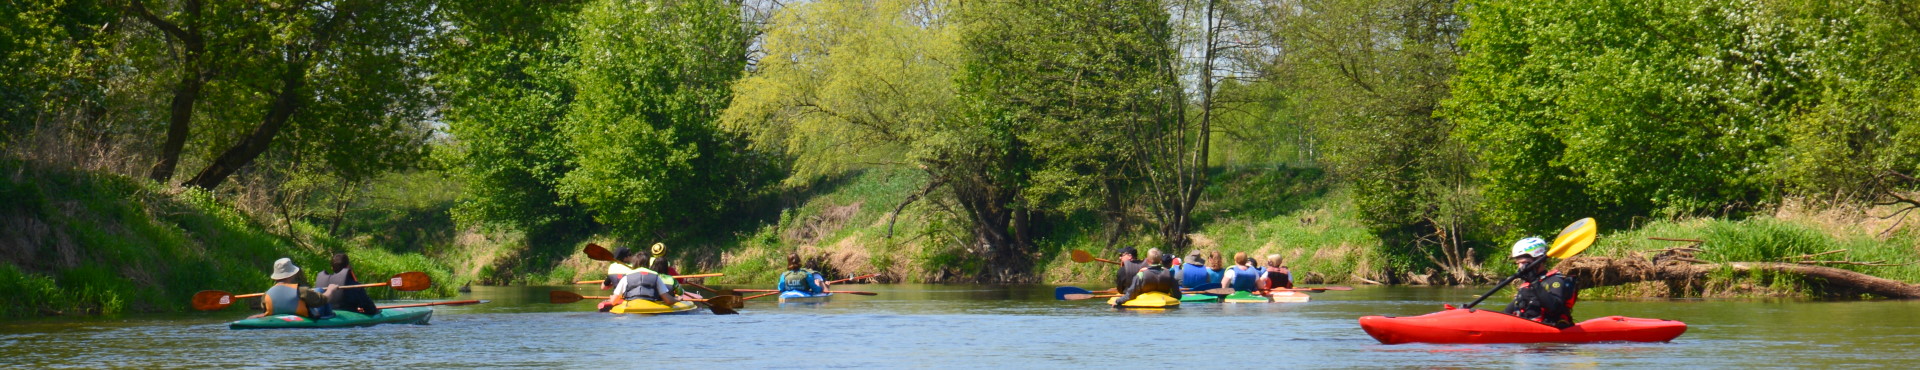 Grupa kajakarzy na rzece Prośnie